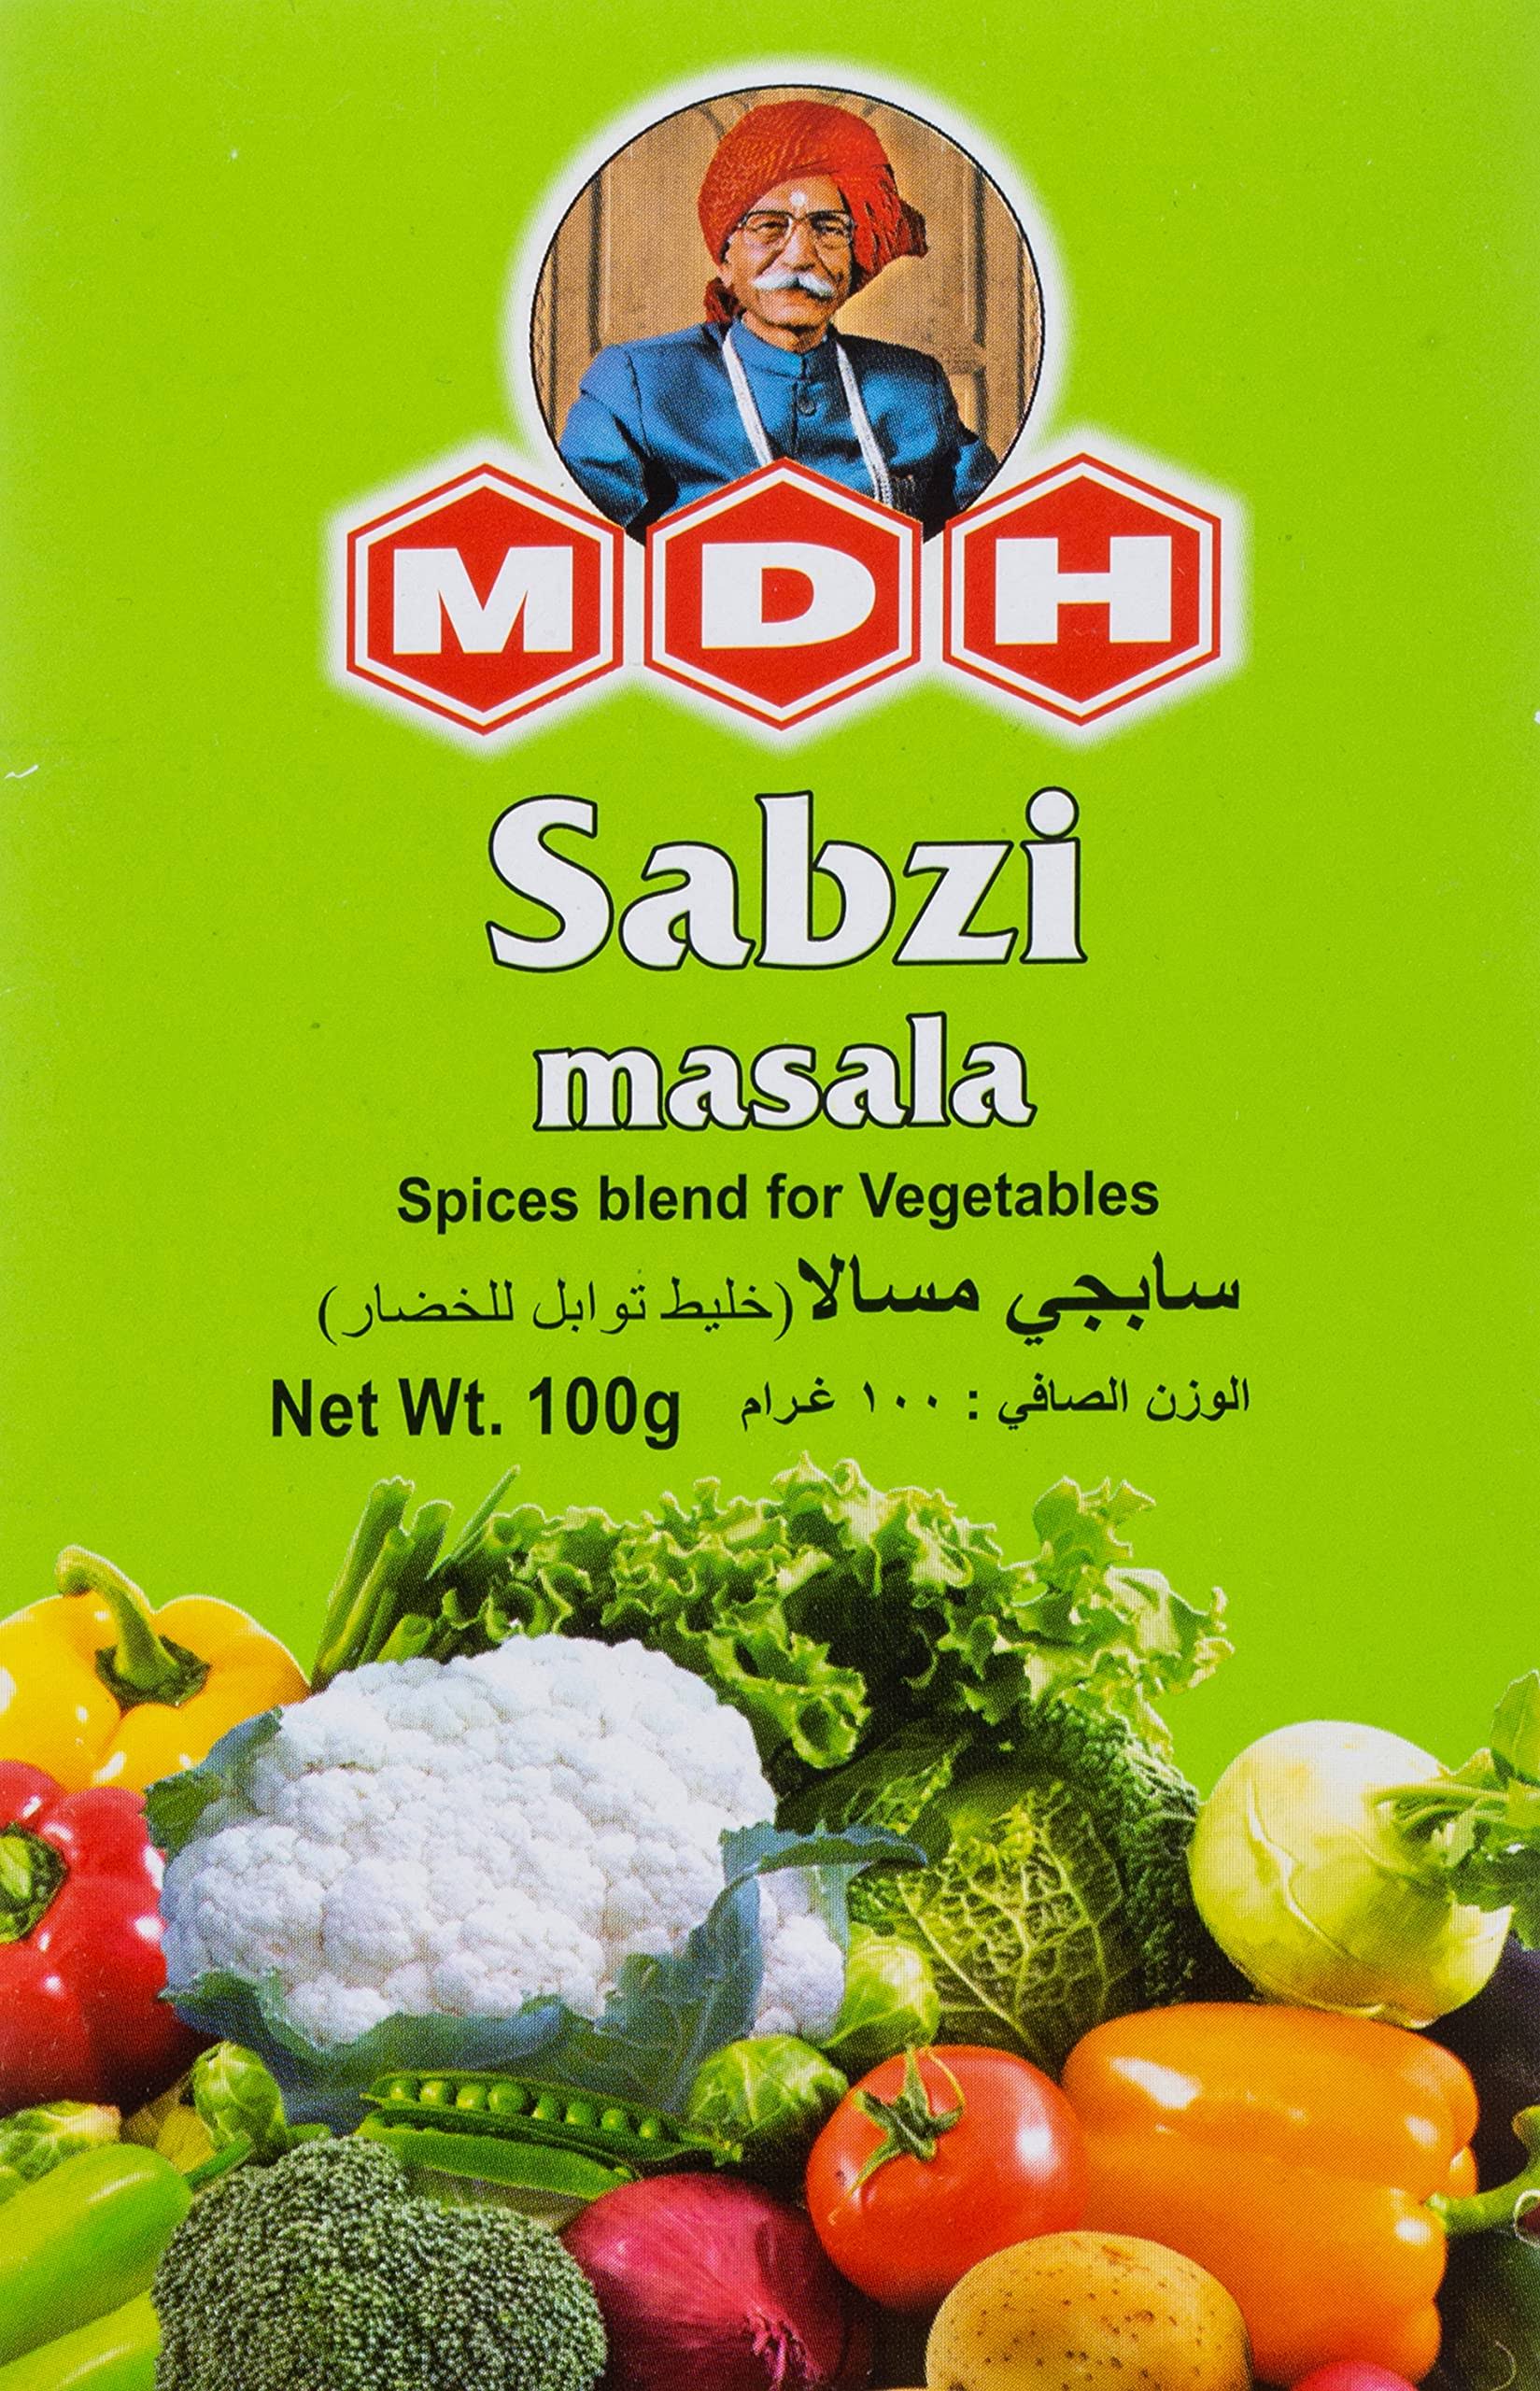 Mdh Sabji Masala - 3.5oz